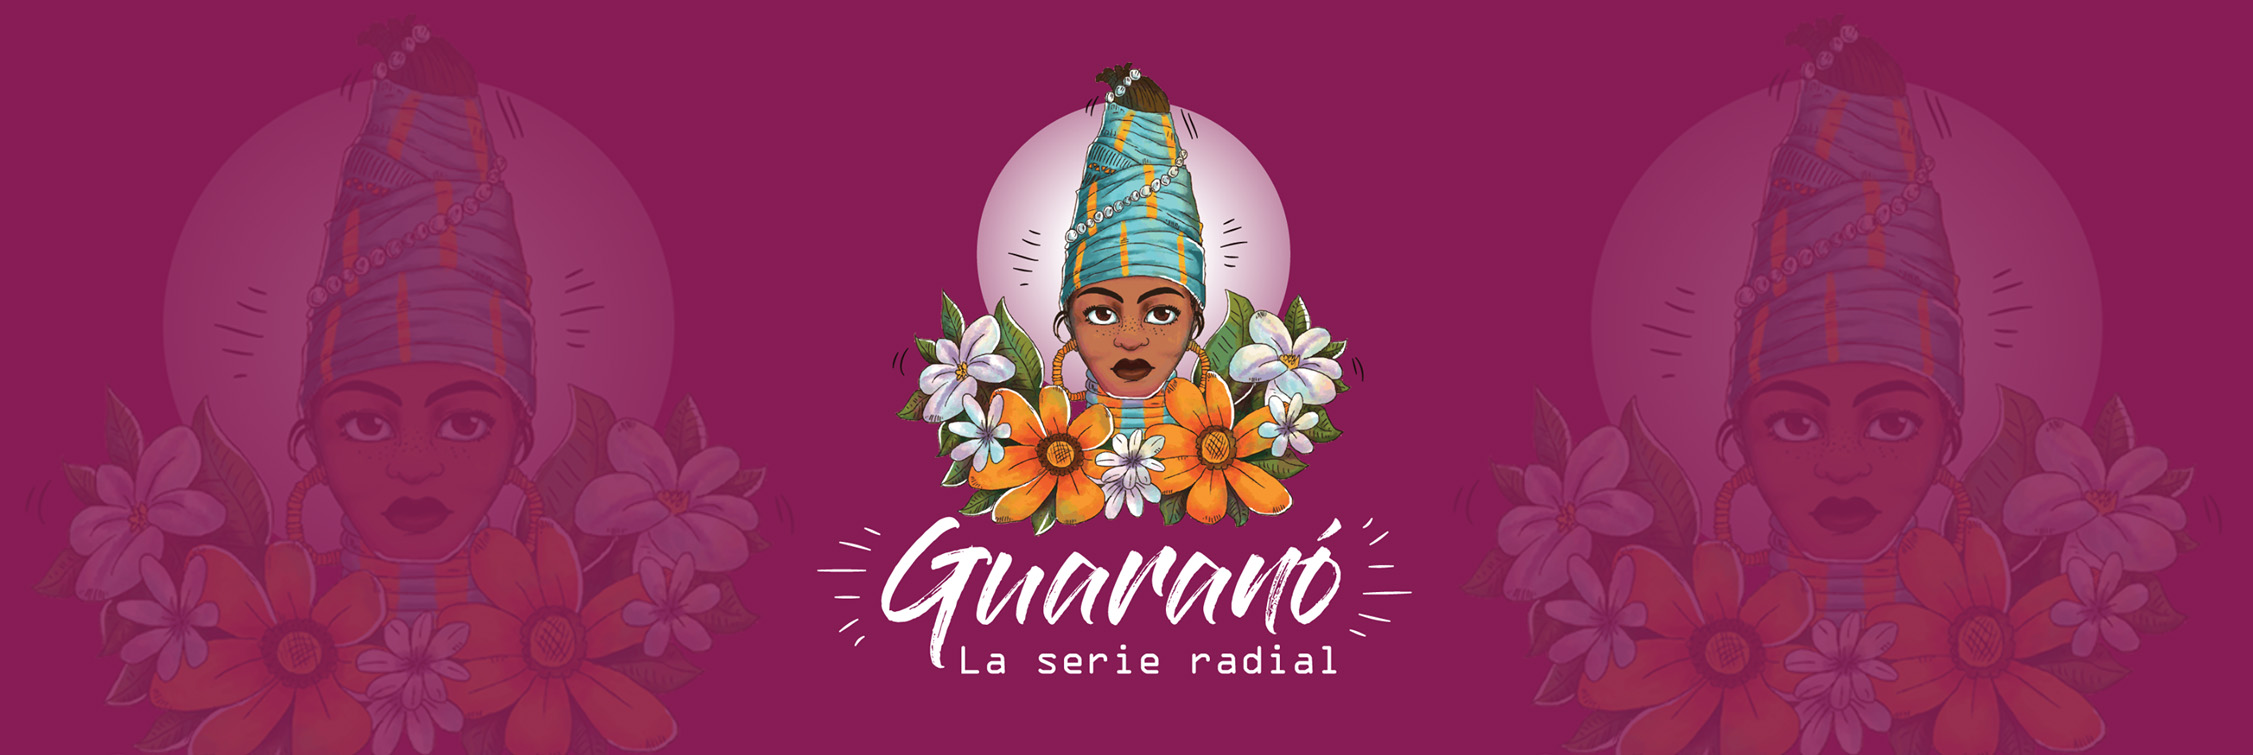 Guaranó, la serie radial